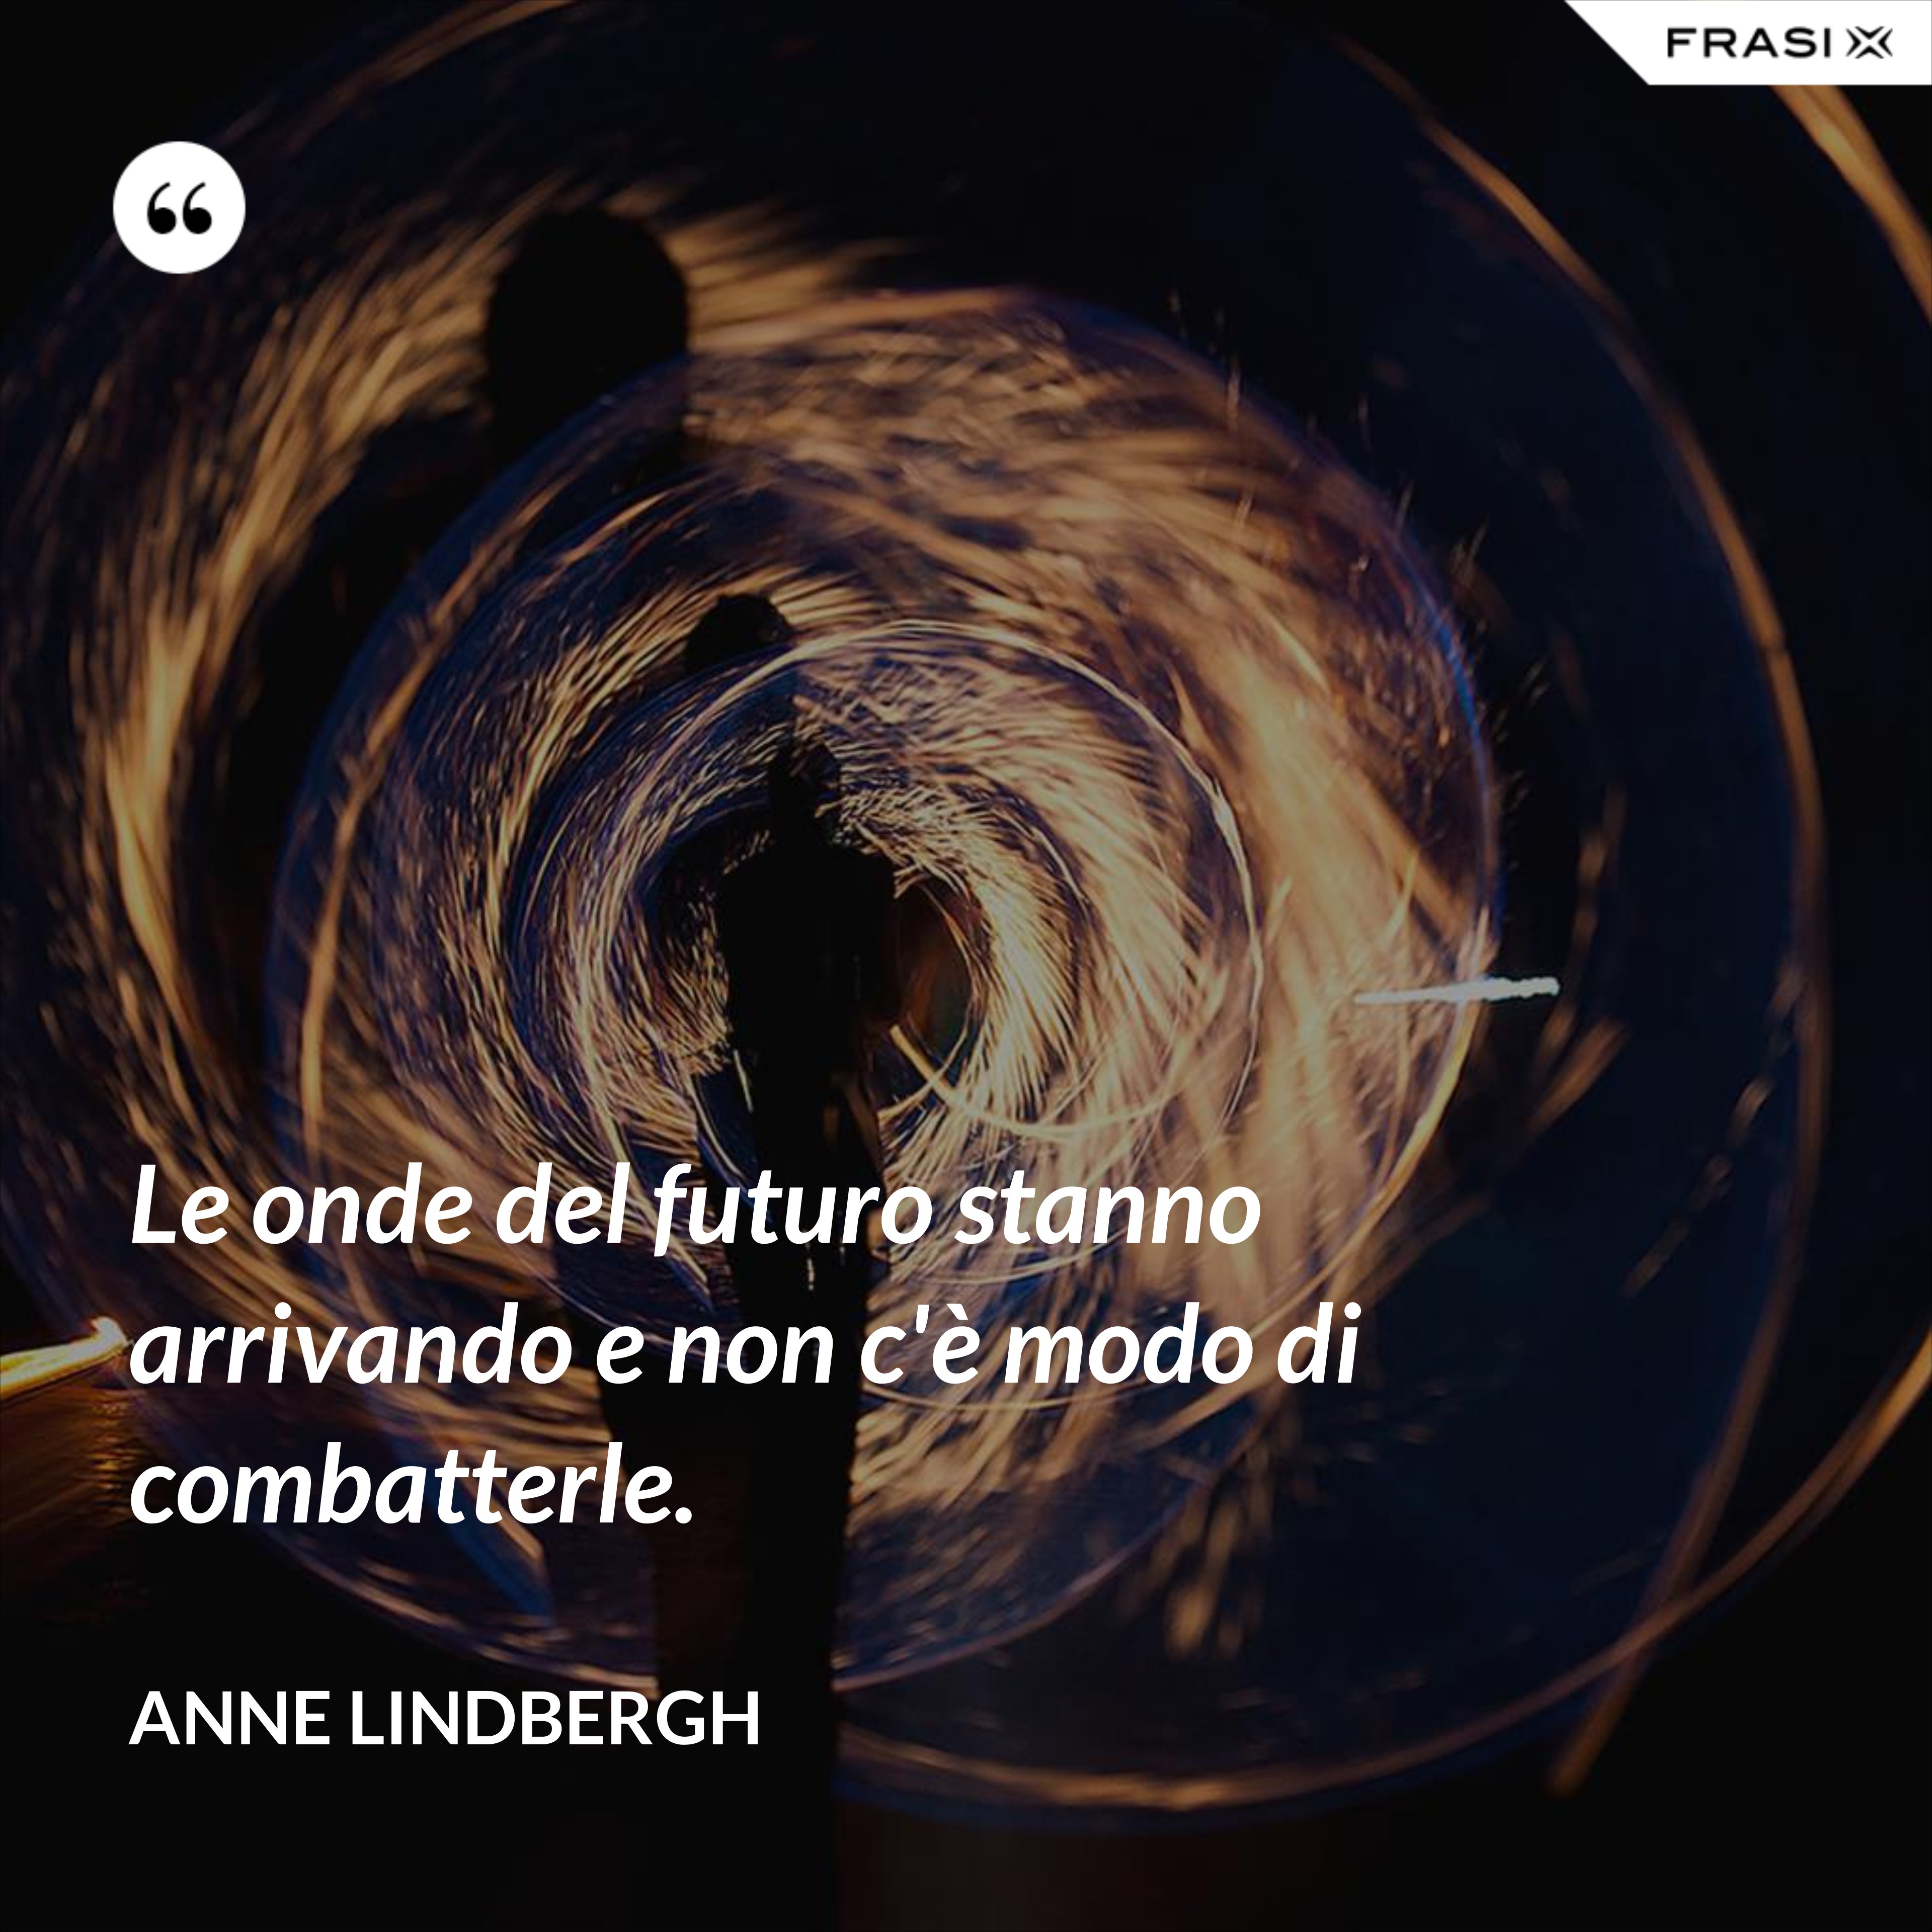 Le onde del futuro stanno arrivando e non c'è modo di combatterle. - Anne Lindbergh